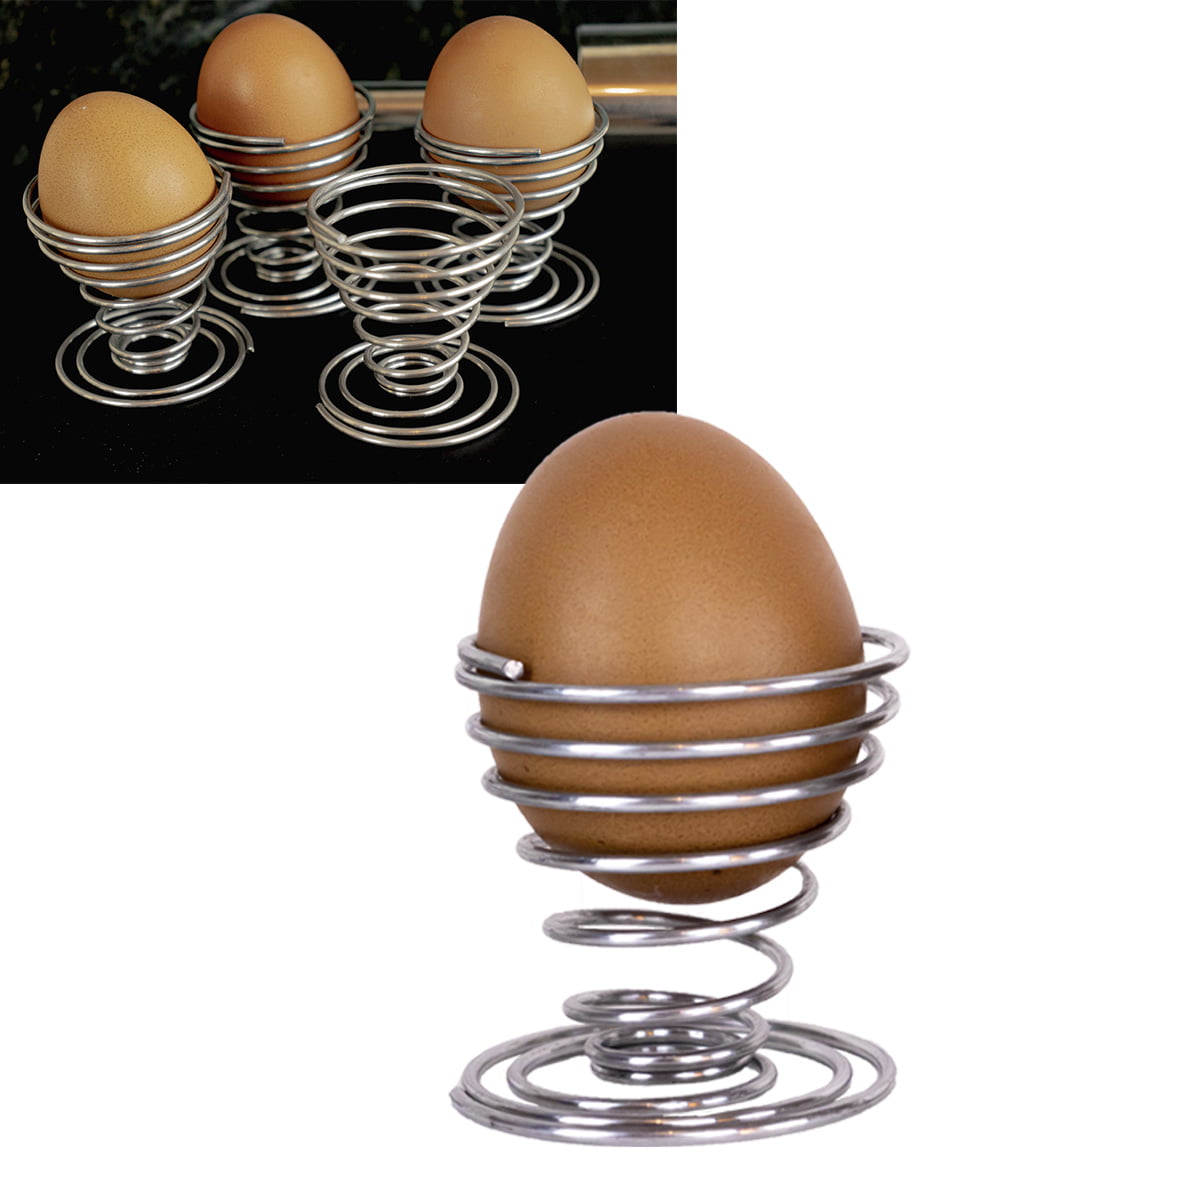 Suporte para ovos cozidos kit 4 porta ovos em inox espiral ck4472